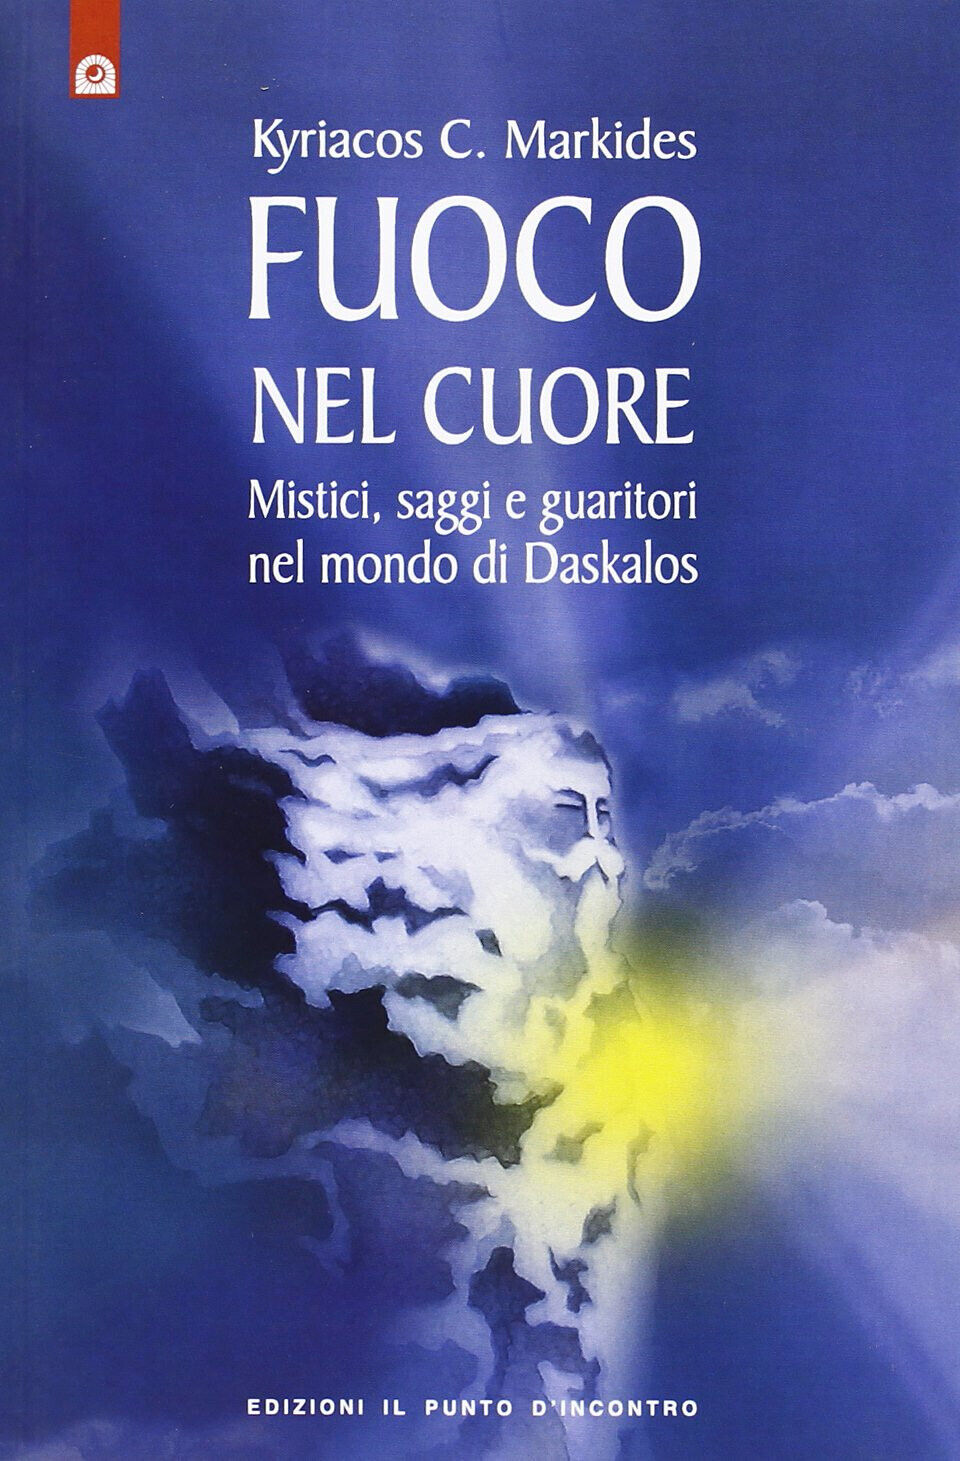 Fuoco nel cuore - Kyriacos C. Markides - Edizioni Il Punto d'Incontro, 1995 libro usato